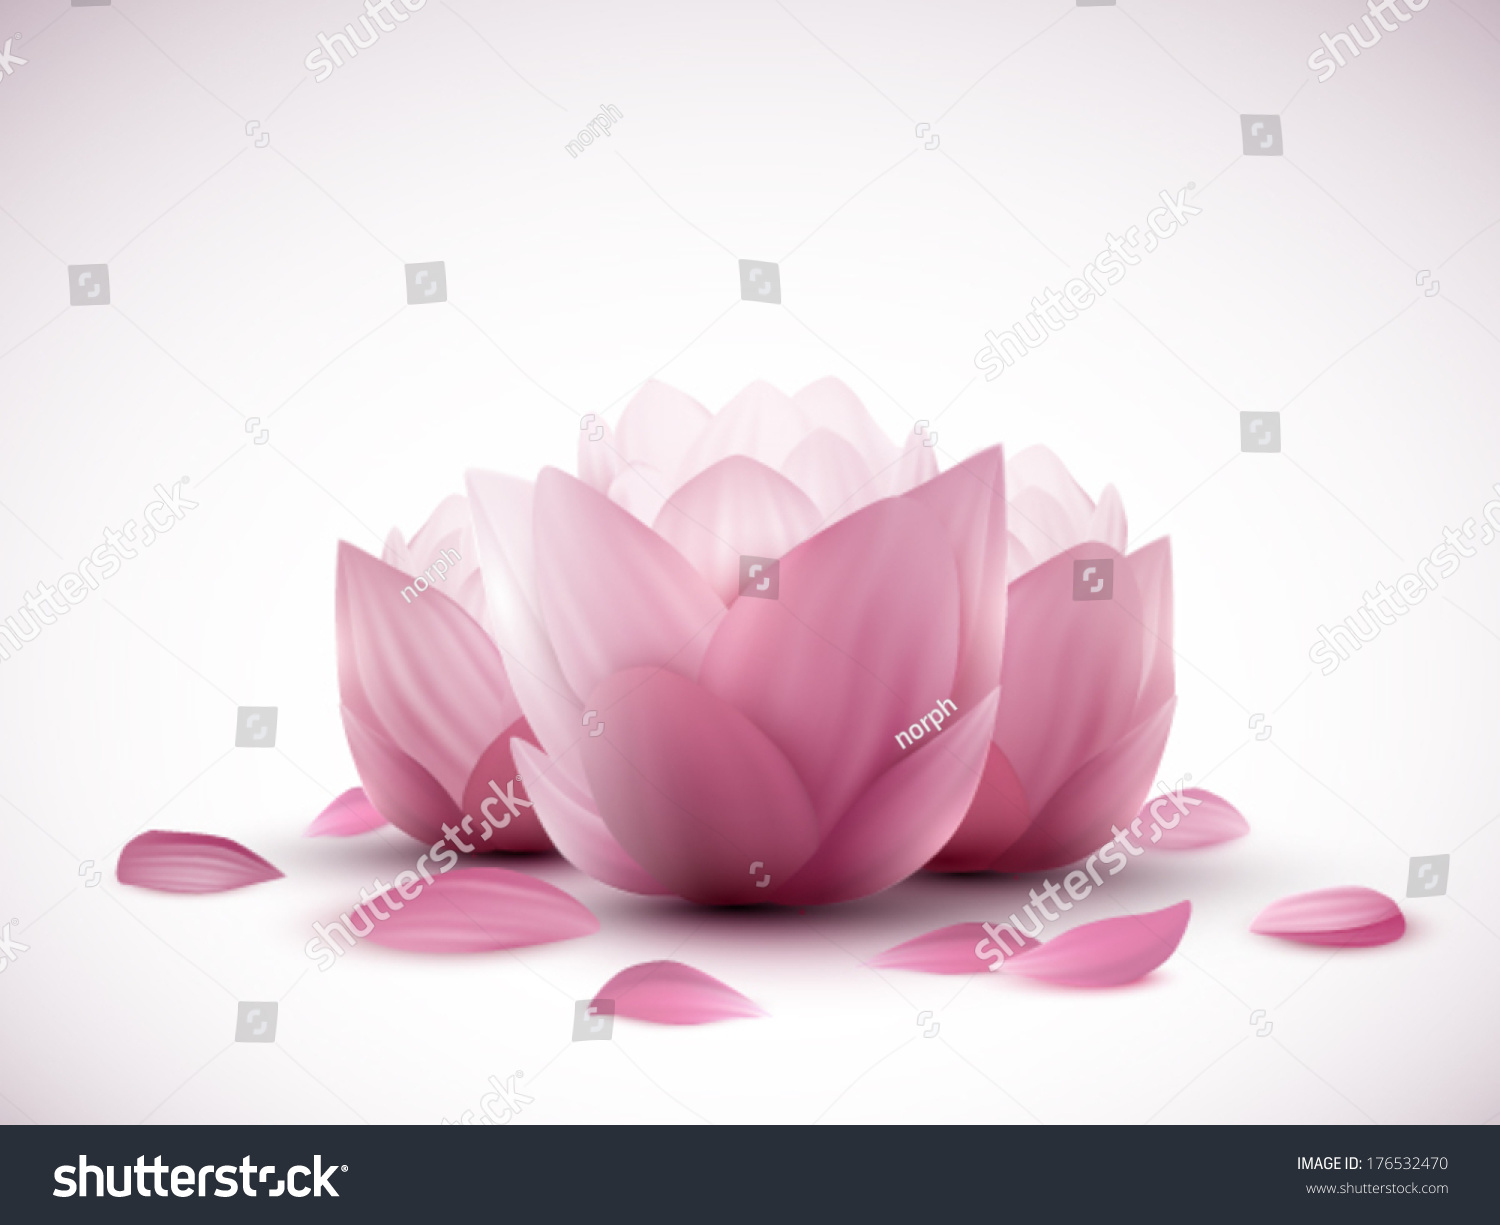 Vector Lotus Flowers Stock Vector 176532470 - Shutterstock